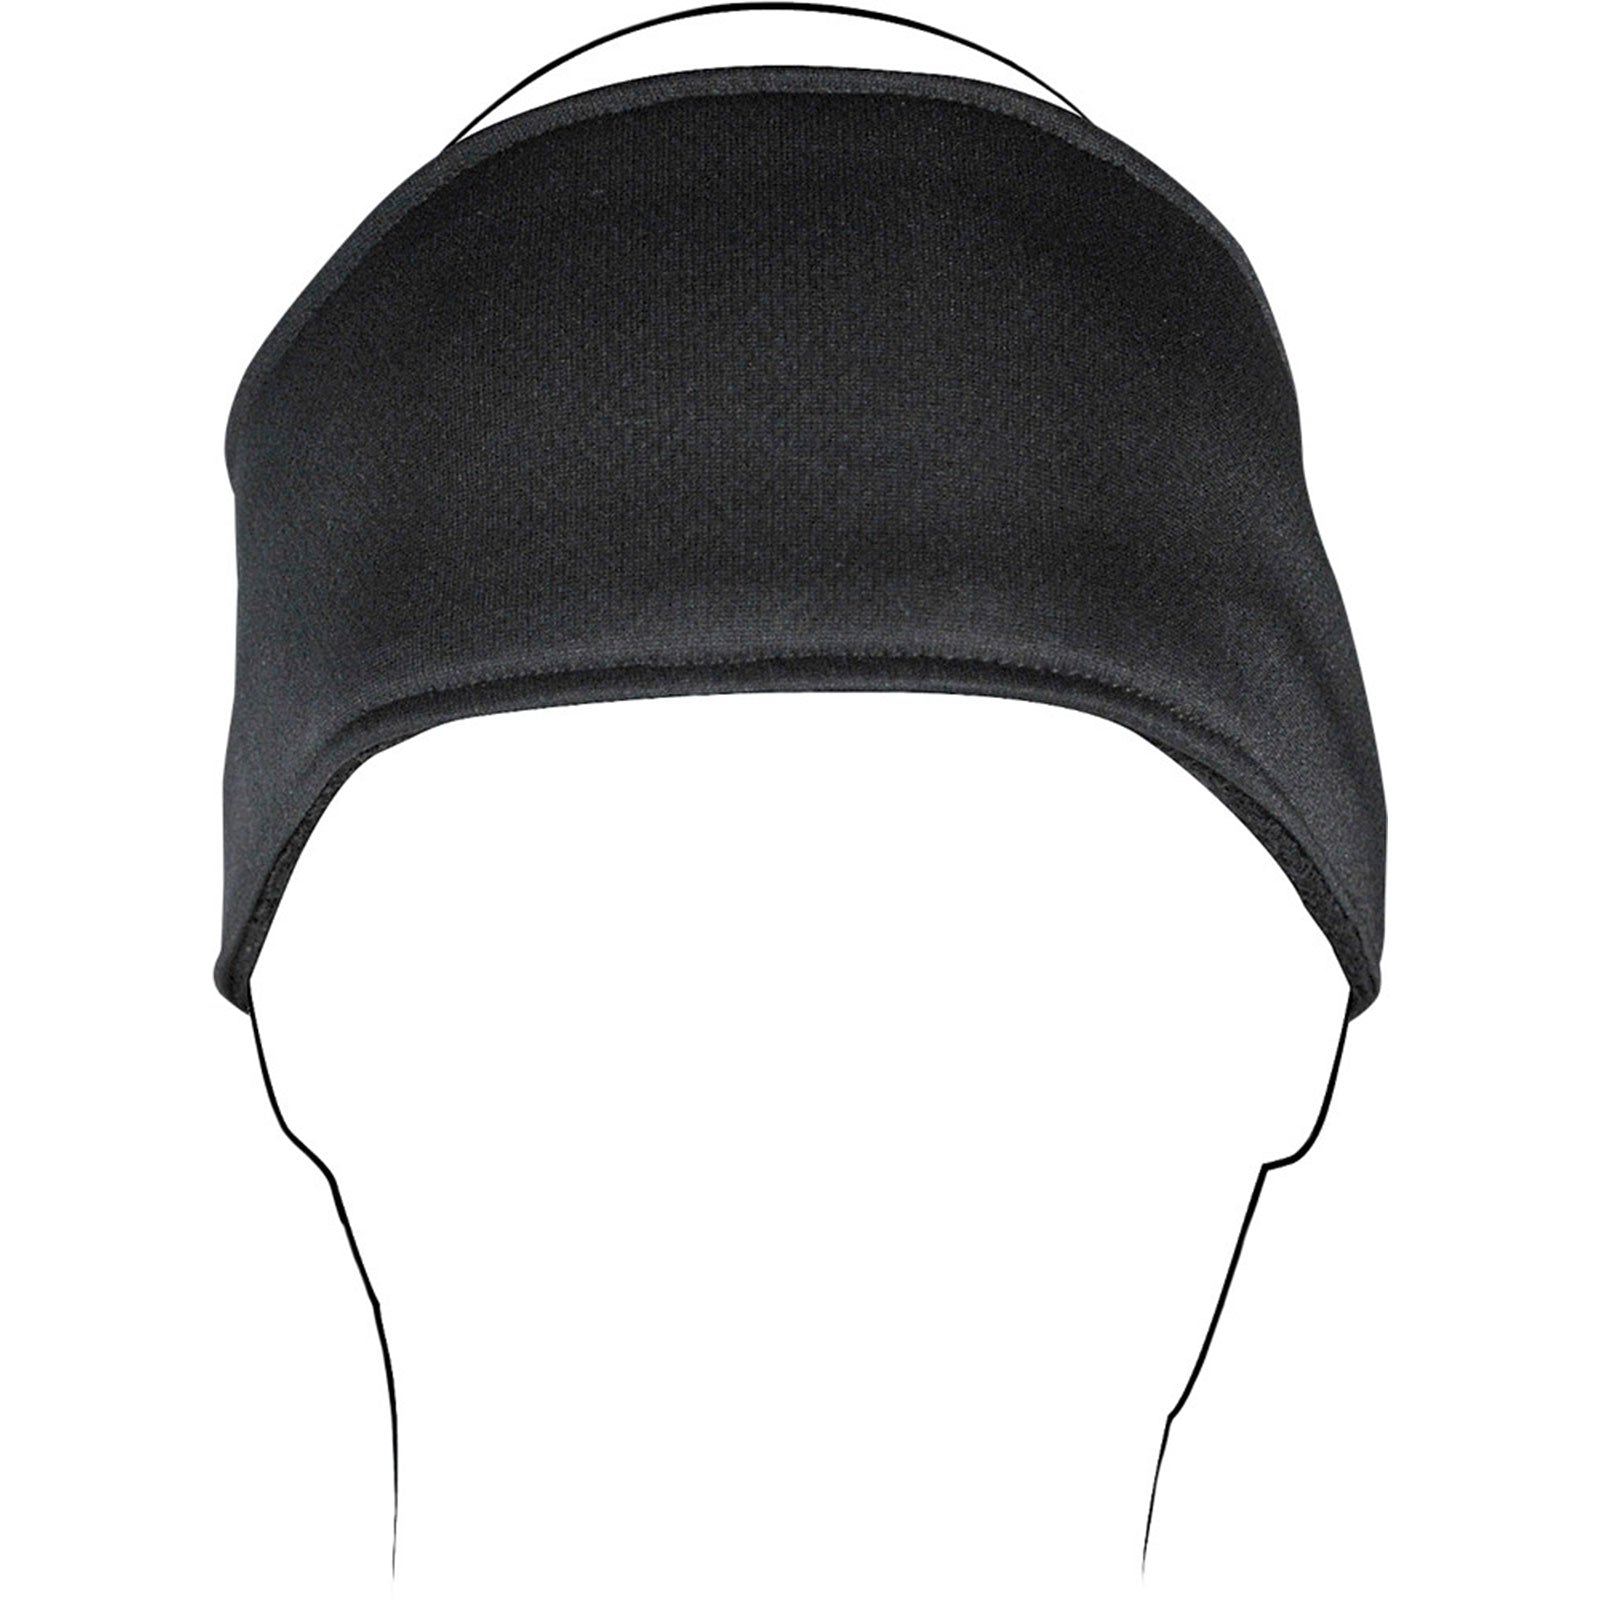 Zan Headgear Headwrap Adult Hea-26-4637-1